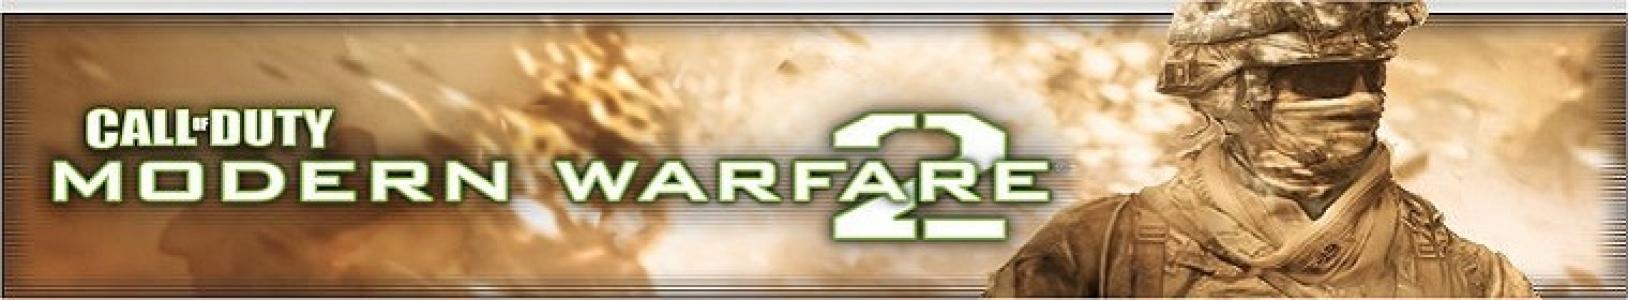 Call of Duty: Modern Warfare 2 banner